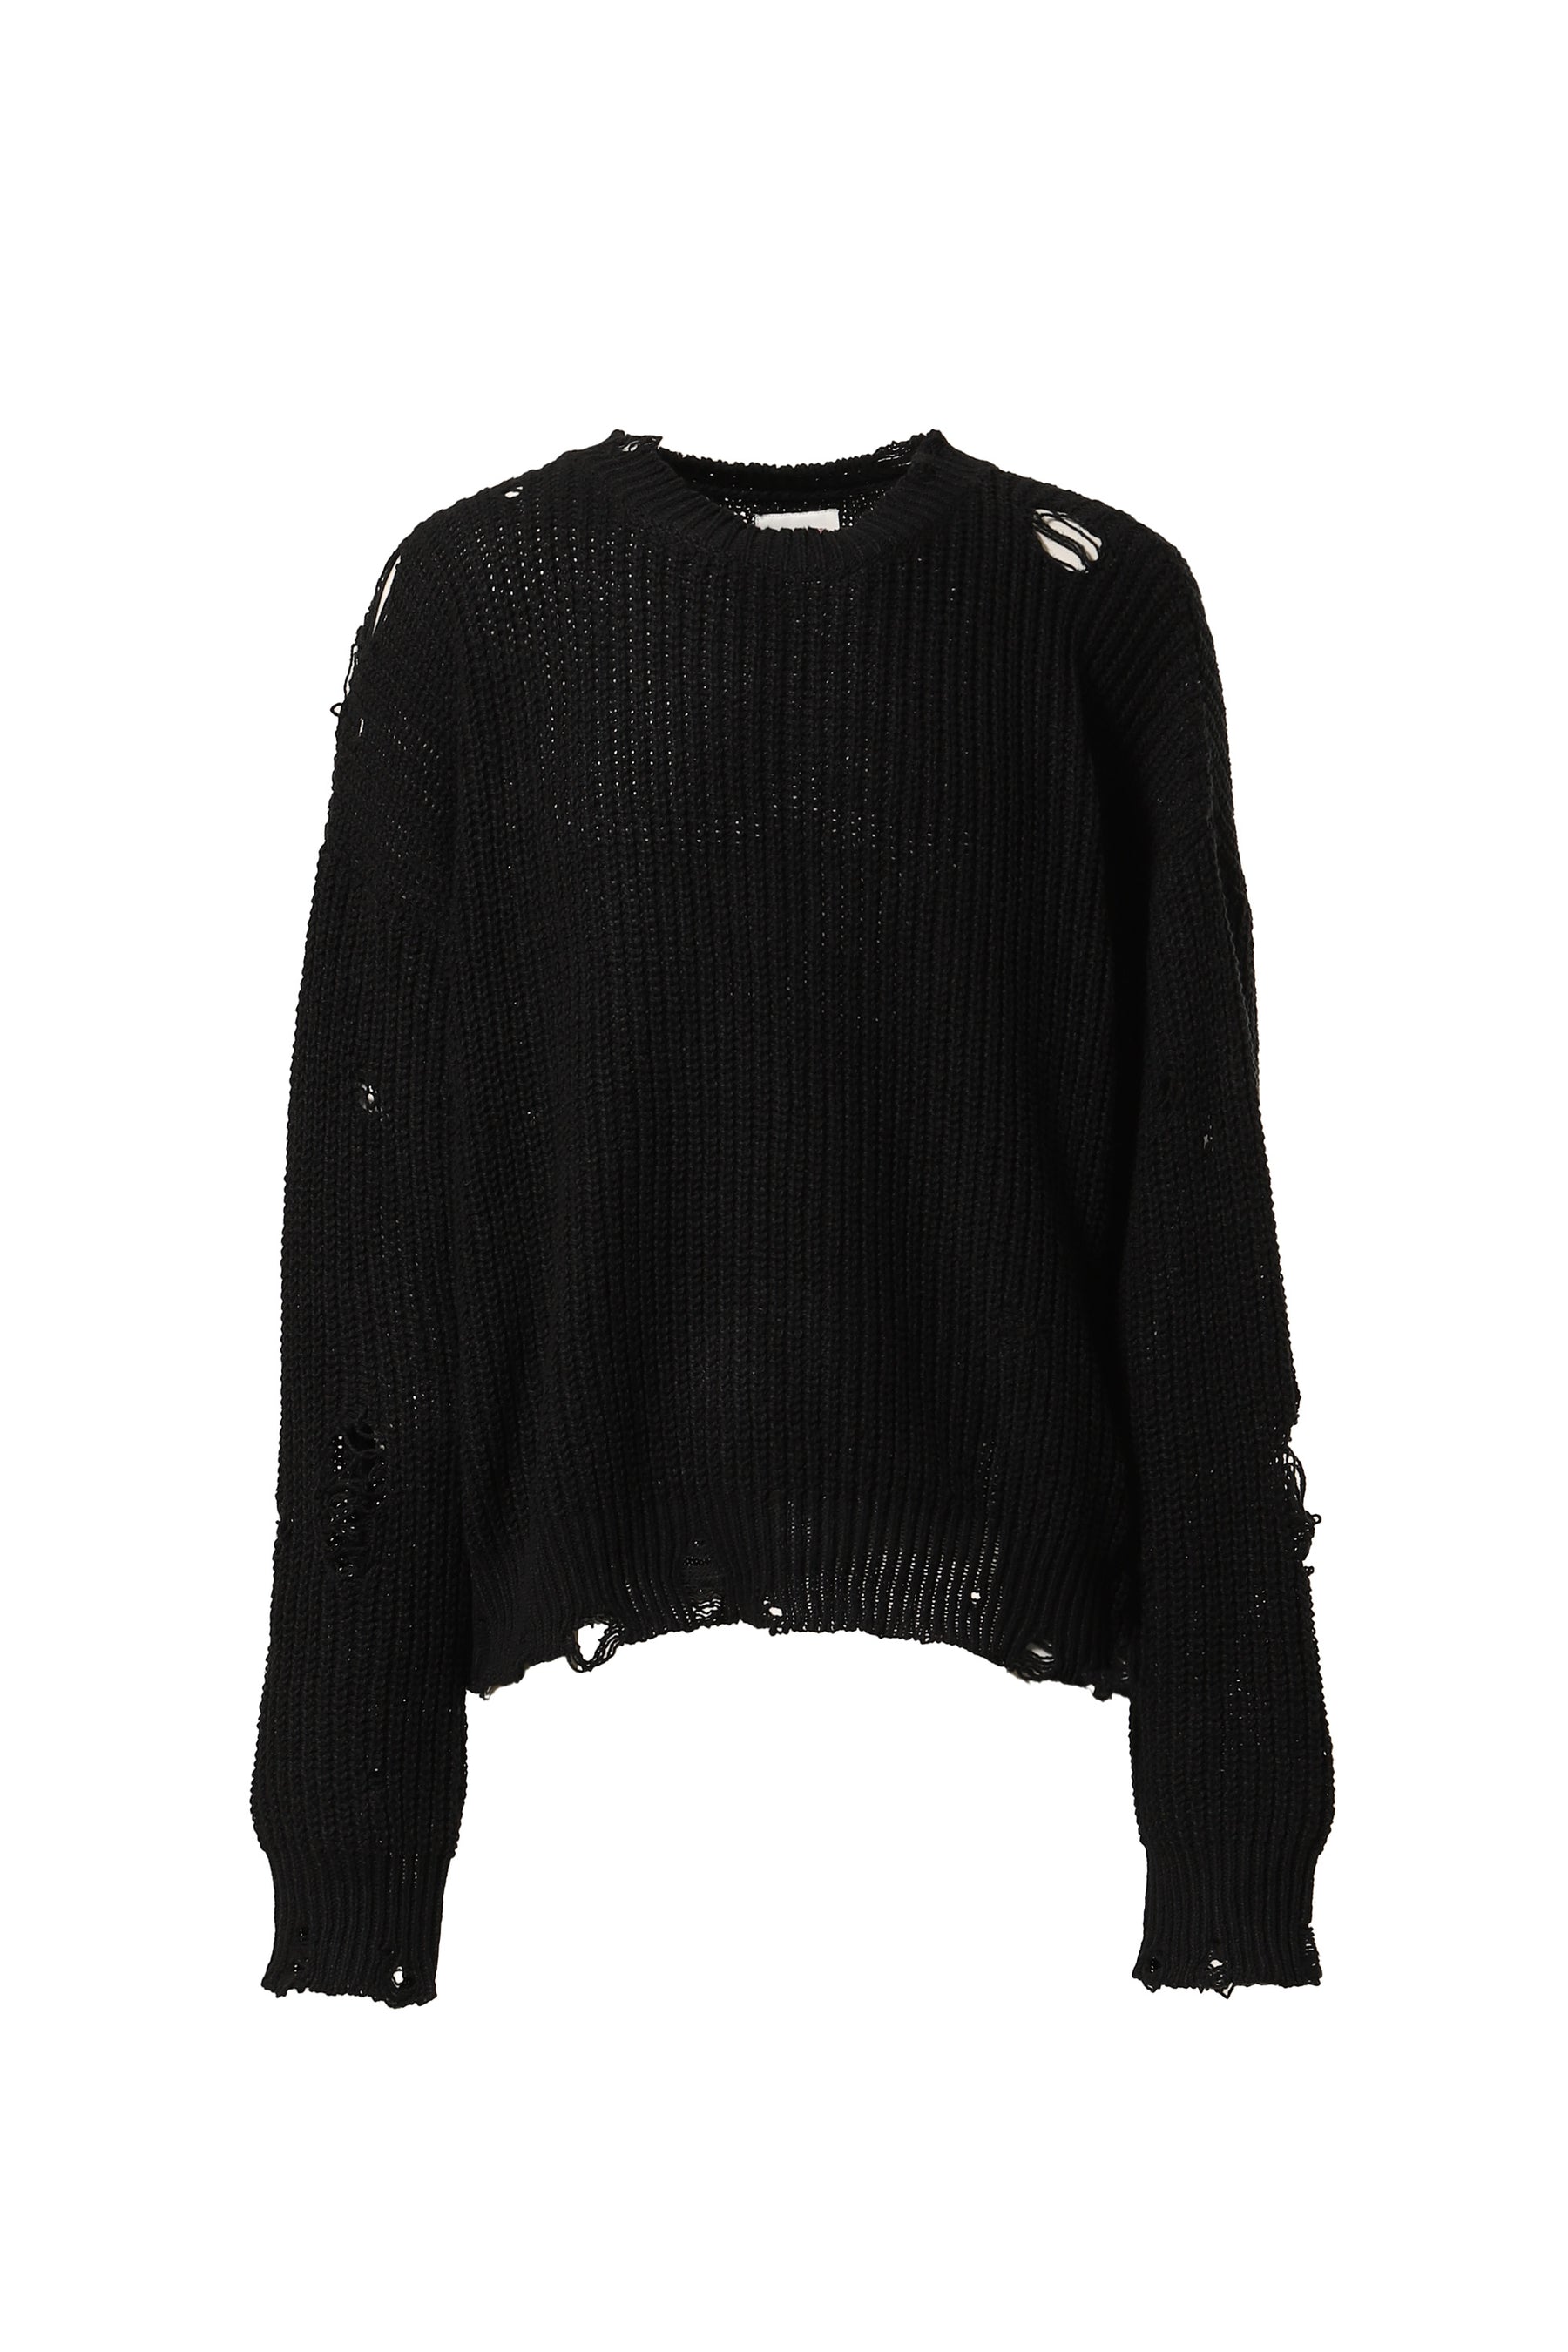 袖丈62cmKAMIYA | Distressed Pullover Sweater 黒